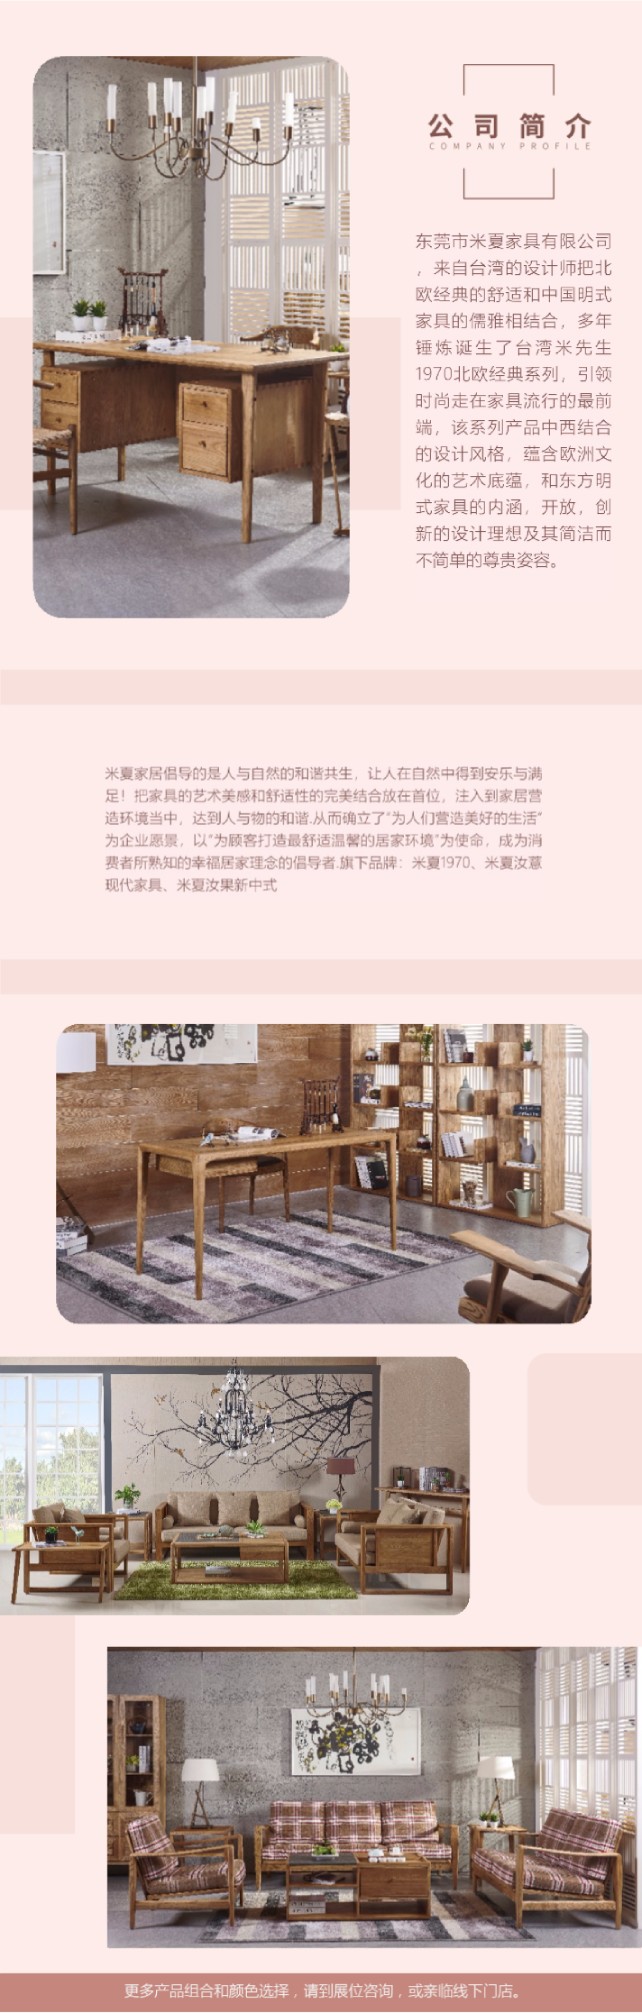 米夏家具，为顾客打造最舒适温馨的居家环境